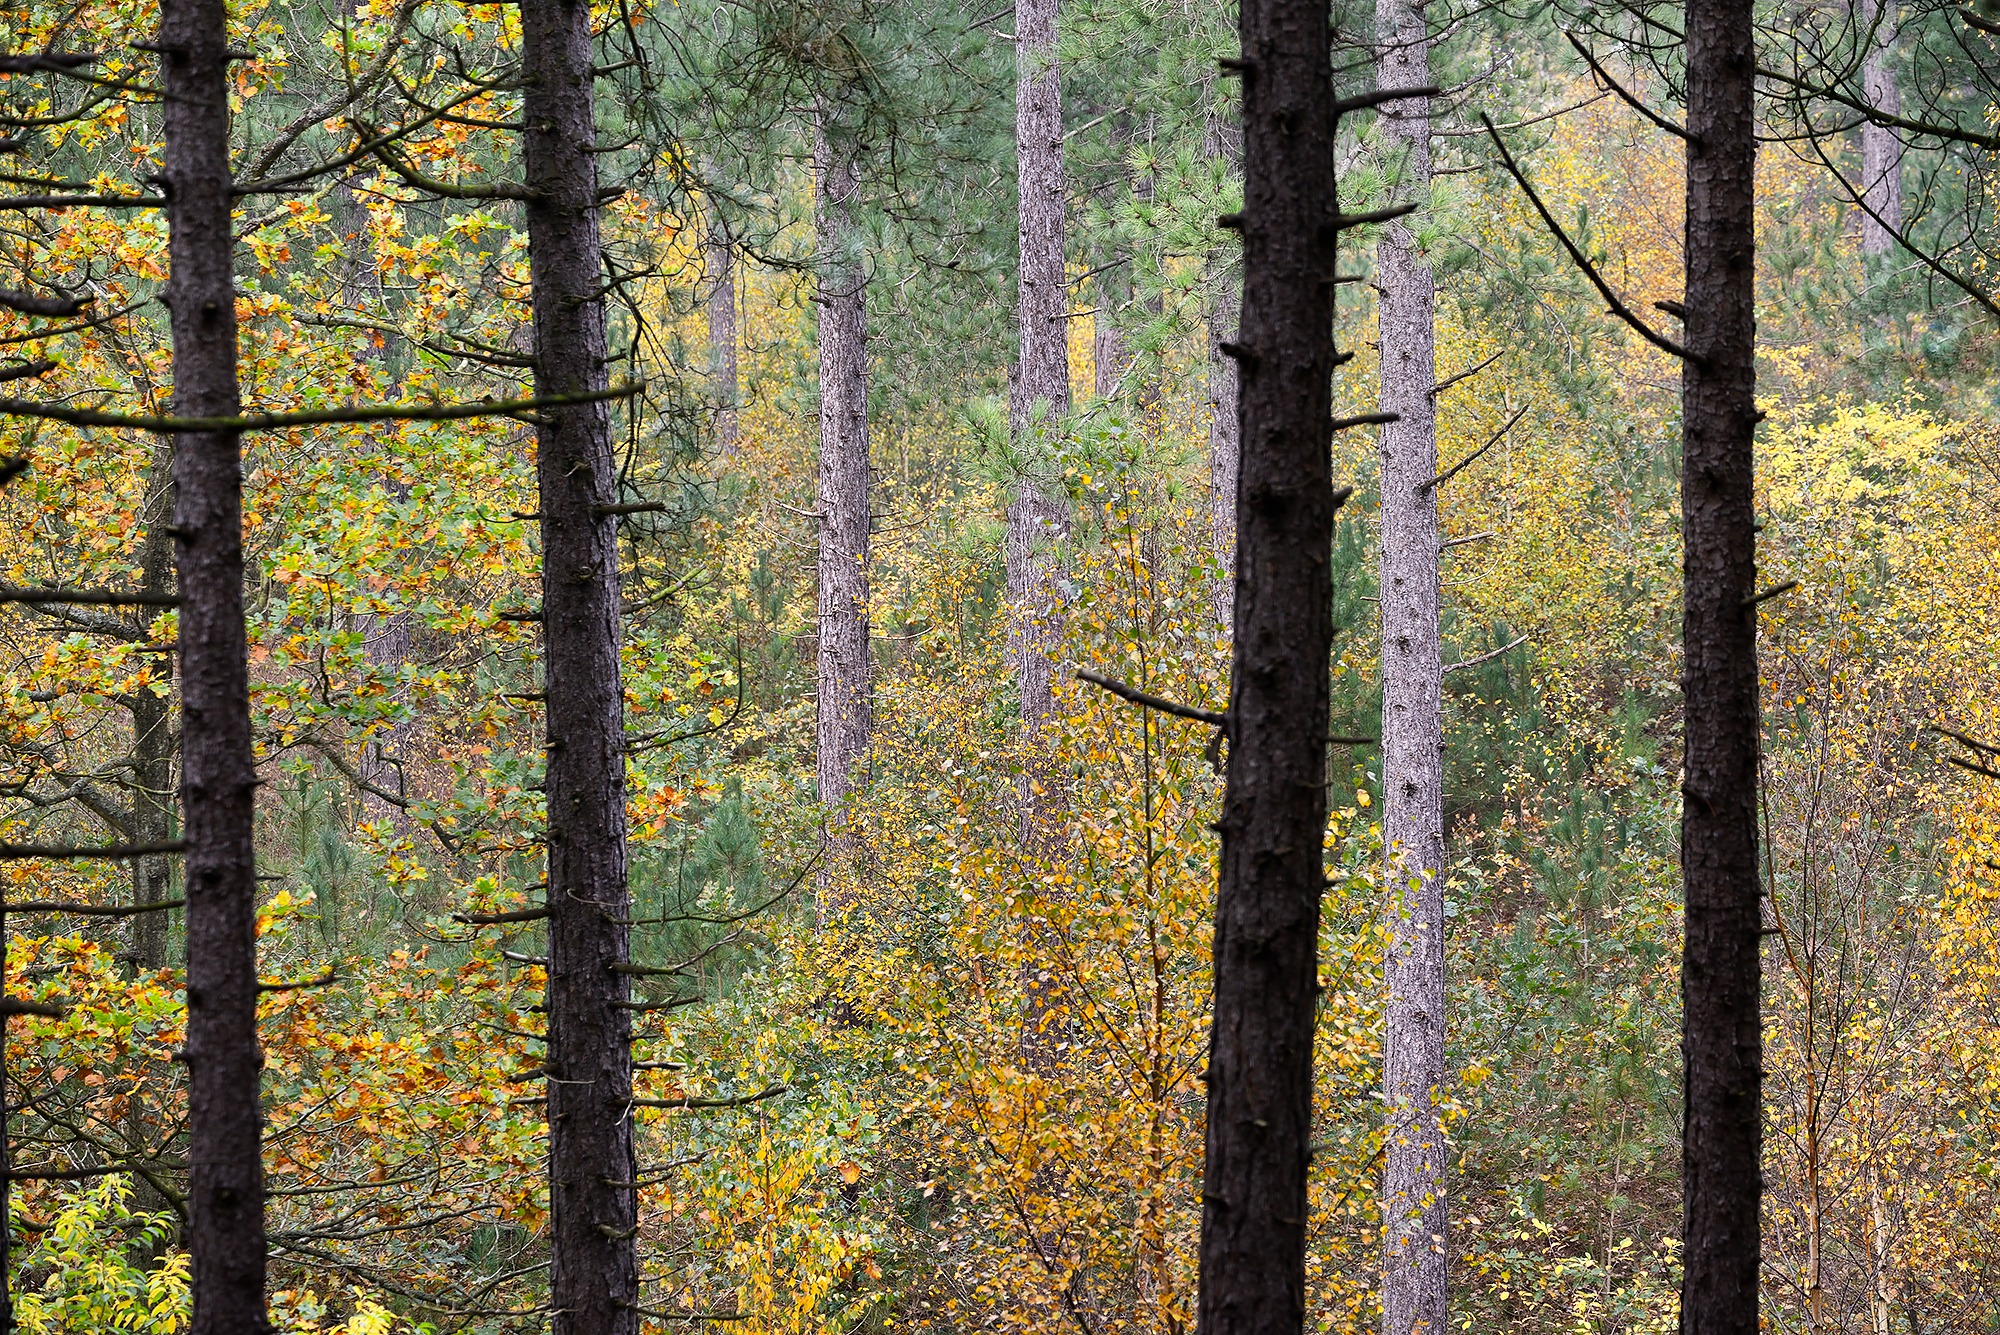 Doorkijkje tussen boomstammen in naaldbos naar verkleurde bladeren tijdens herfst van de Schoorlse Duinen.